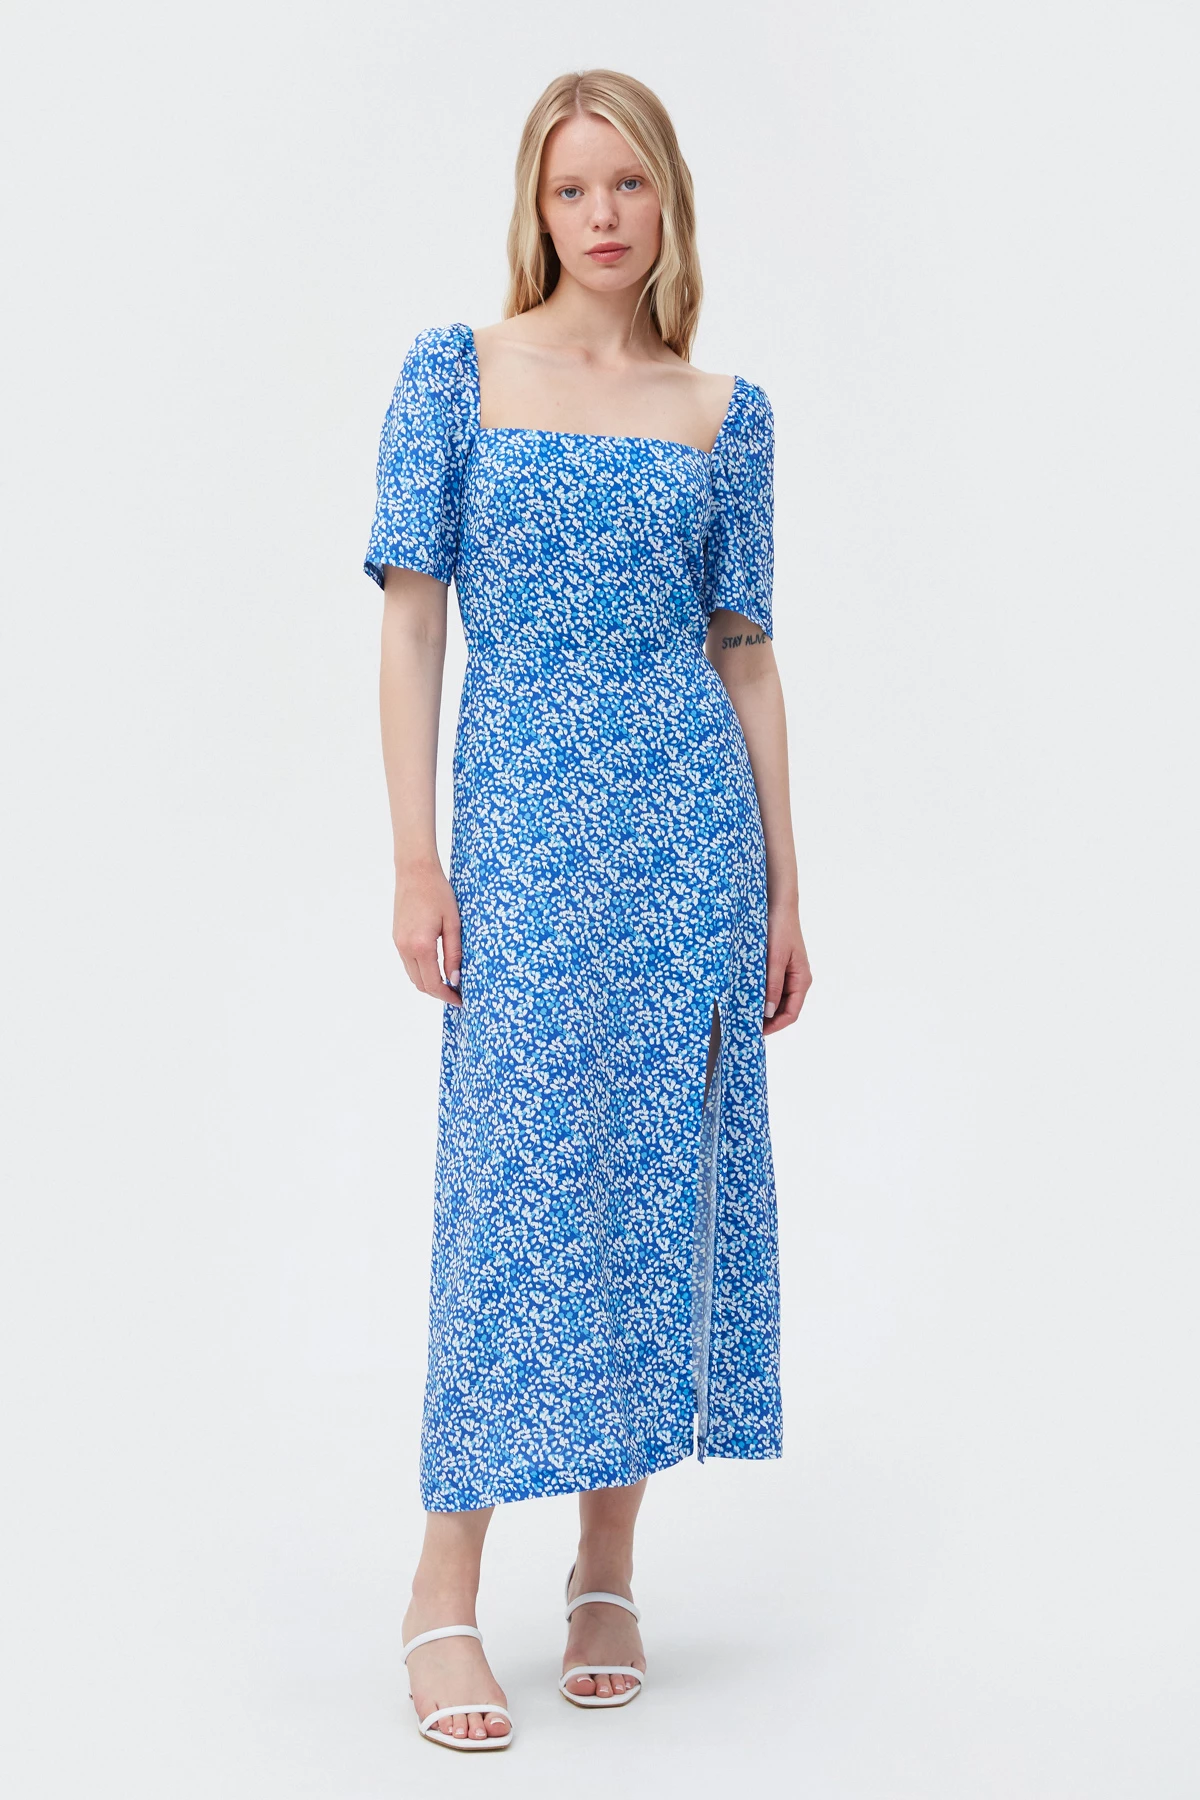 Сукня міді в принт "сині краплі" з віскози, фото 2